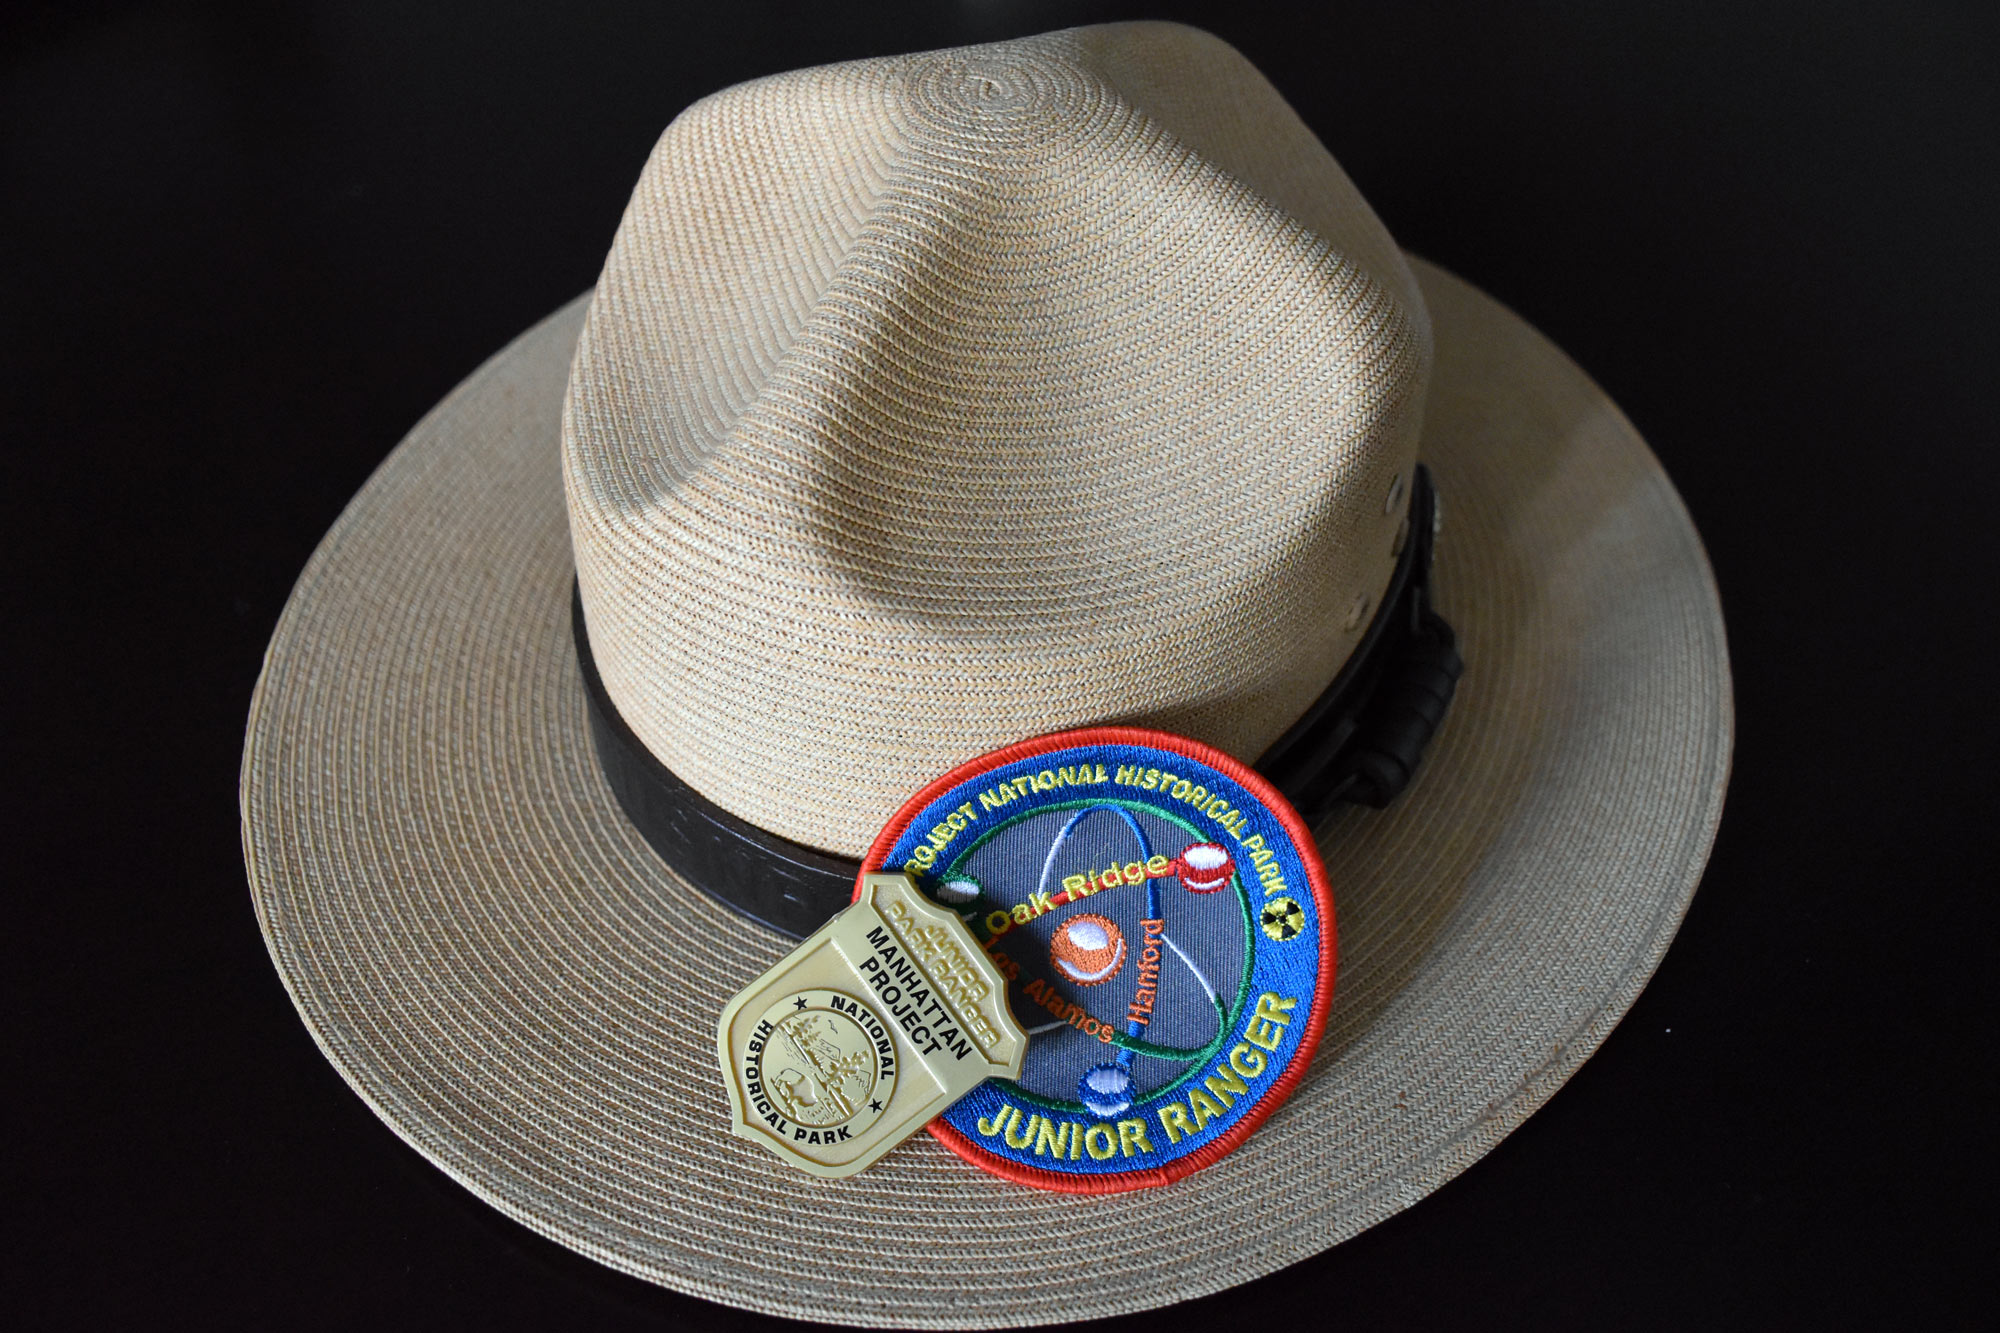 Ranger hat and junior ranger badge